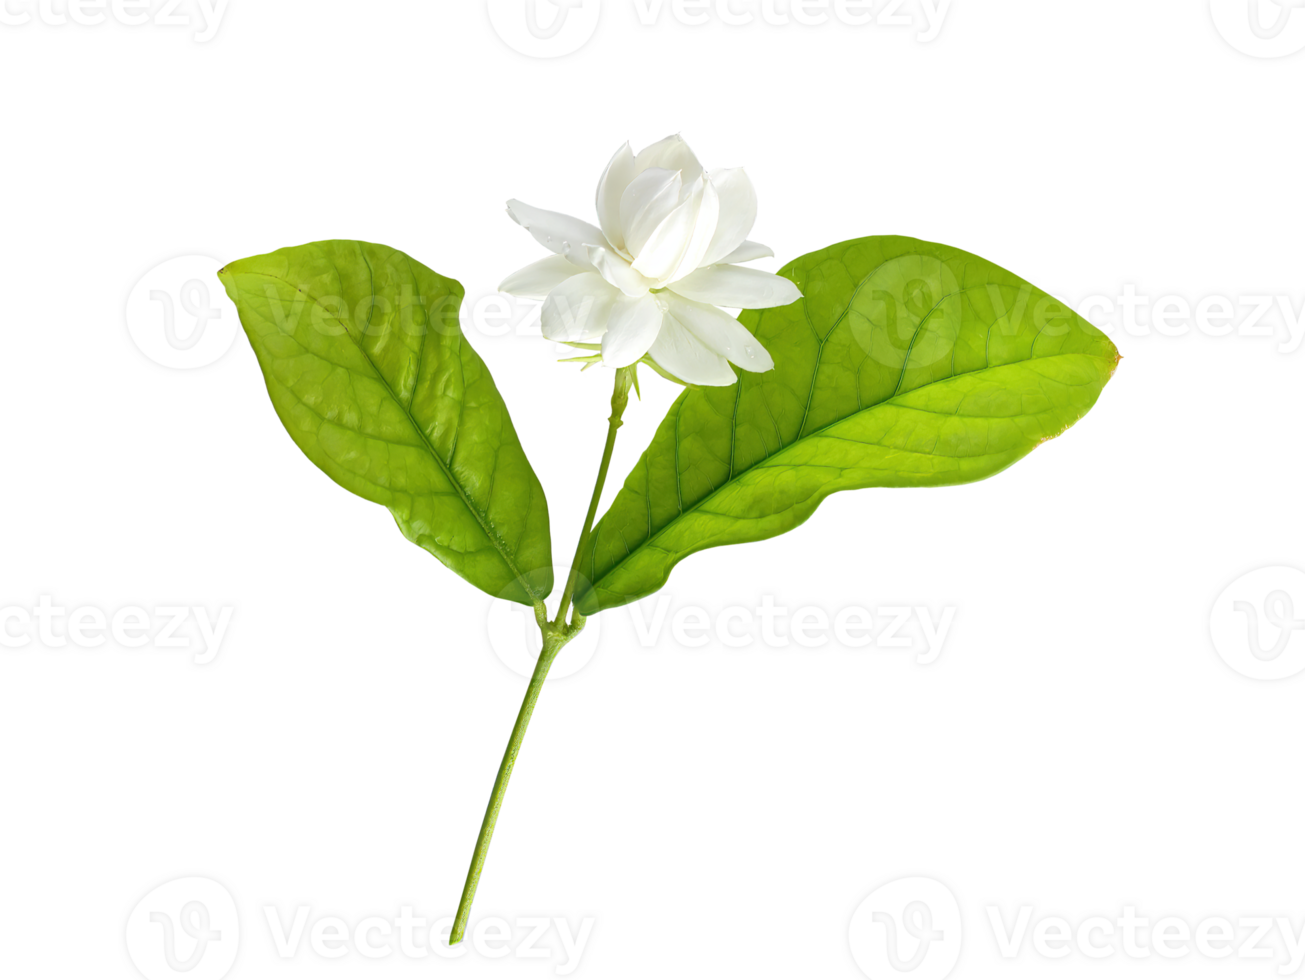 Single Weiß Blume von großartig Herzog von toskana, arabisch Weiß Jasmin, Jasminum Sambac, Aroma, Flora, isoliert, transparent Hintergrund, ausgeschnitten png